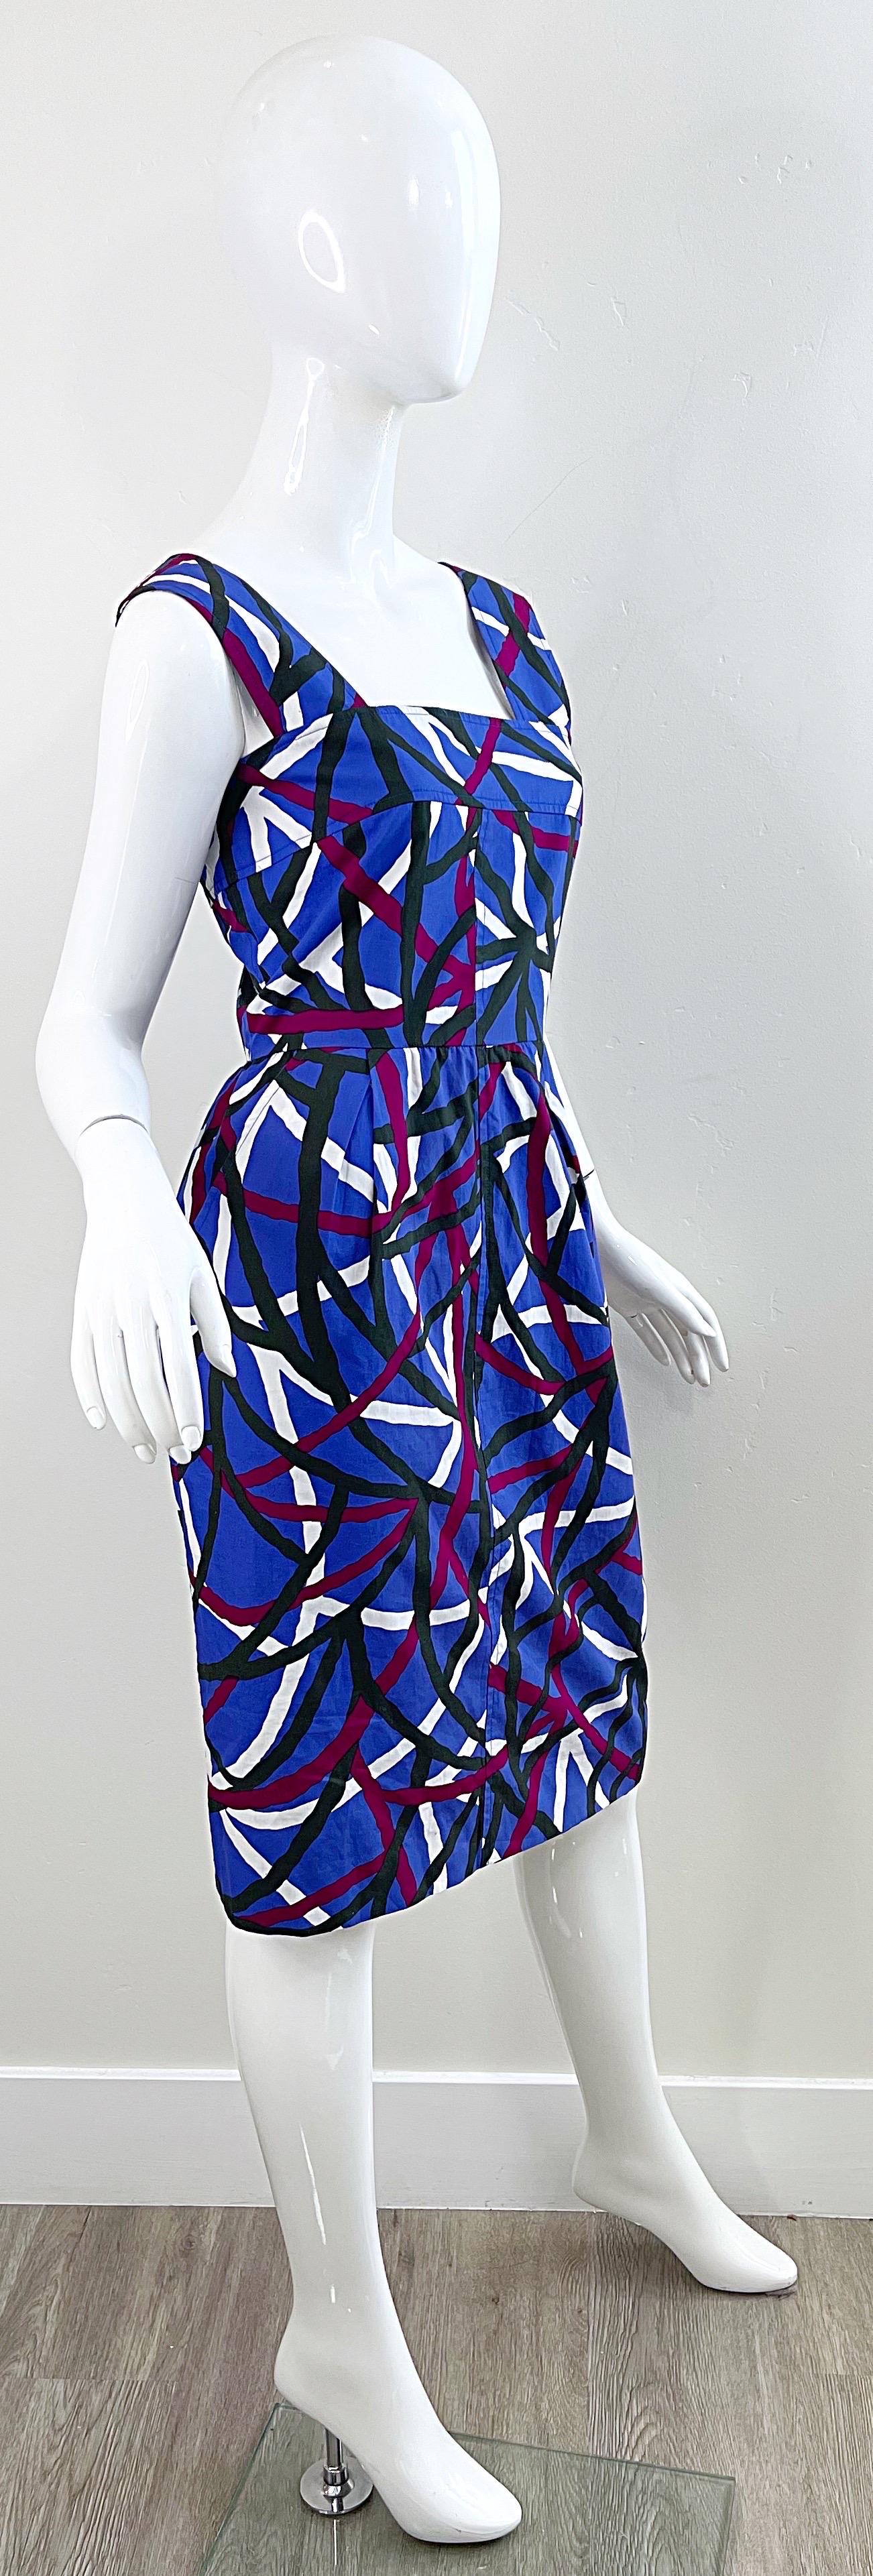 Yves Saint Laurent 1970s YSL Graffiti Print Purple Cotton Vintage 70s Dress For Sale 2